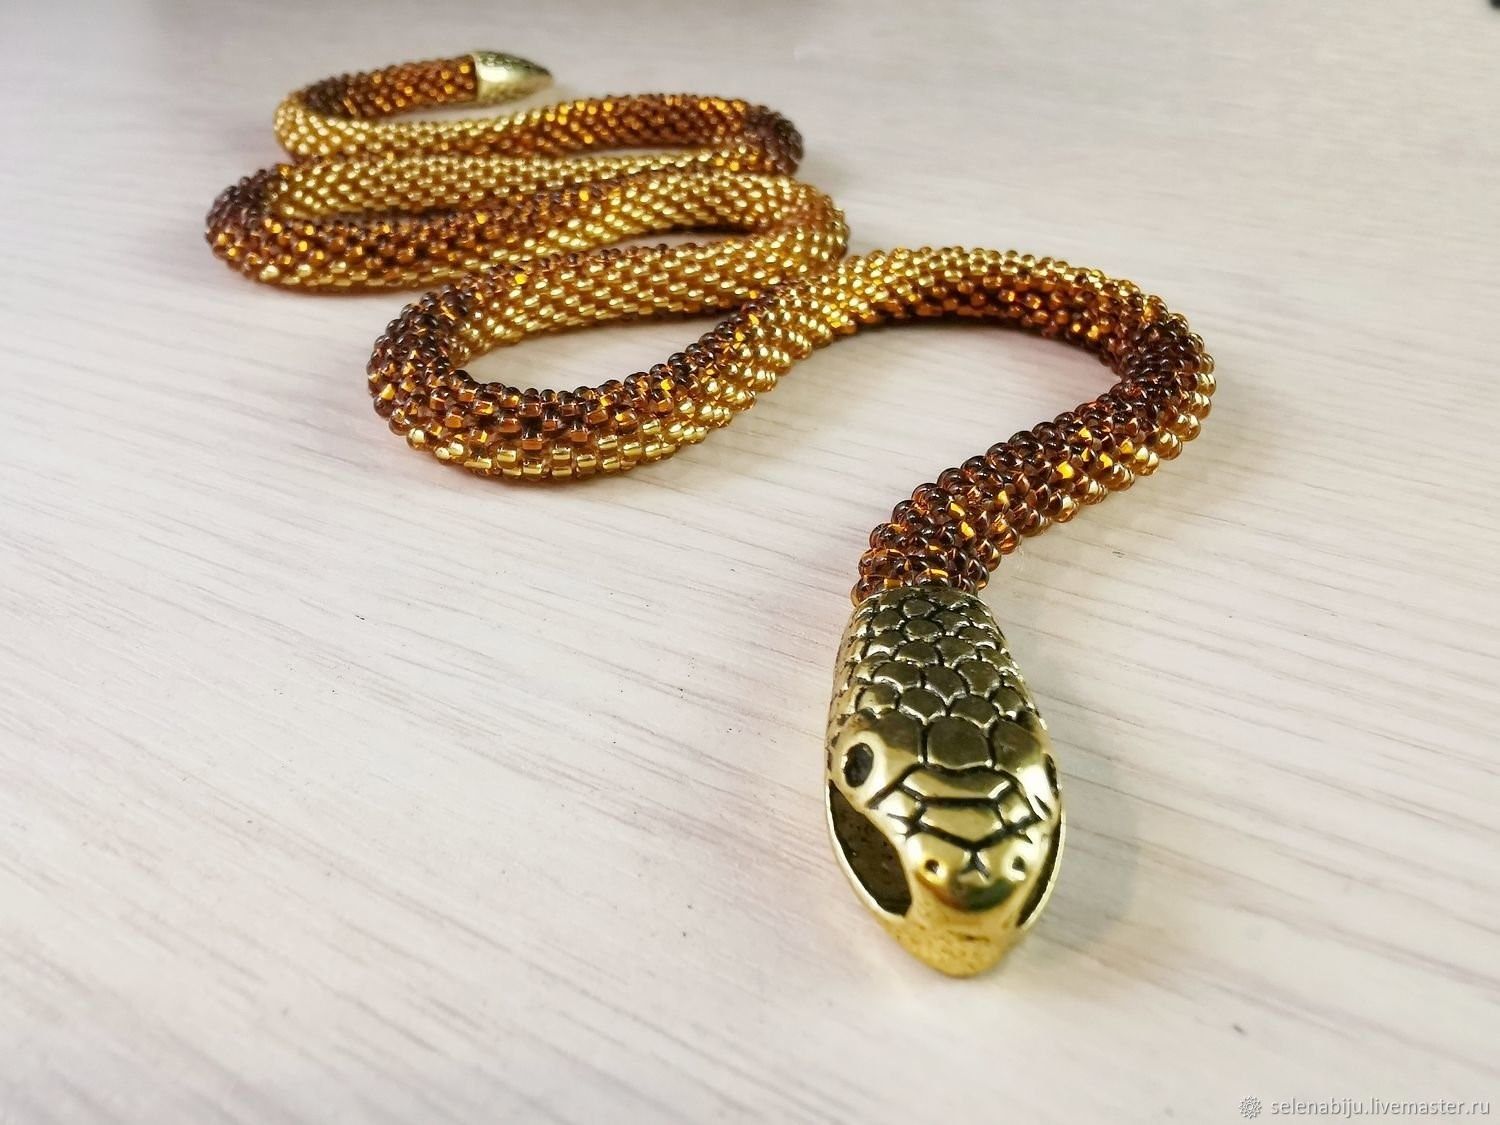 Змея из золота. Золотистова змея. Золотой полоз. Кулон змея золото. Подвеска змея золото.